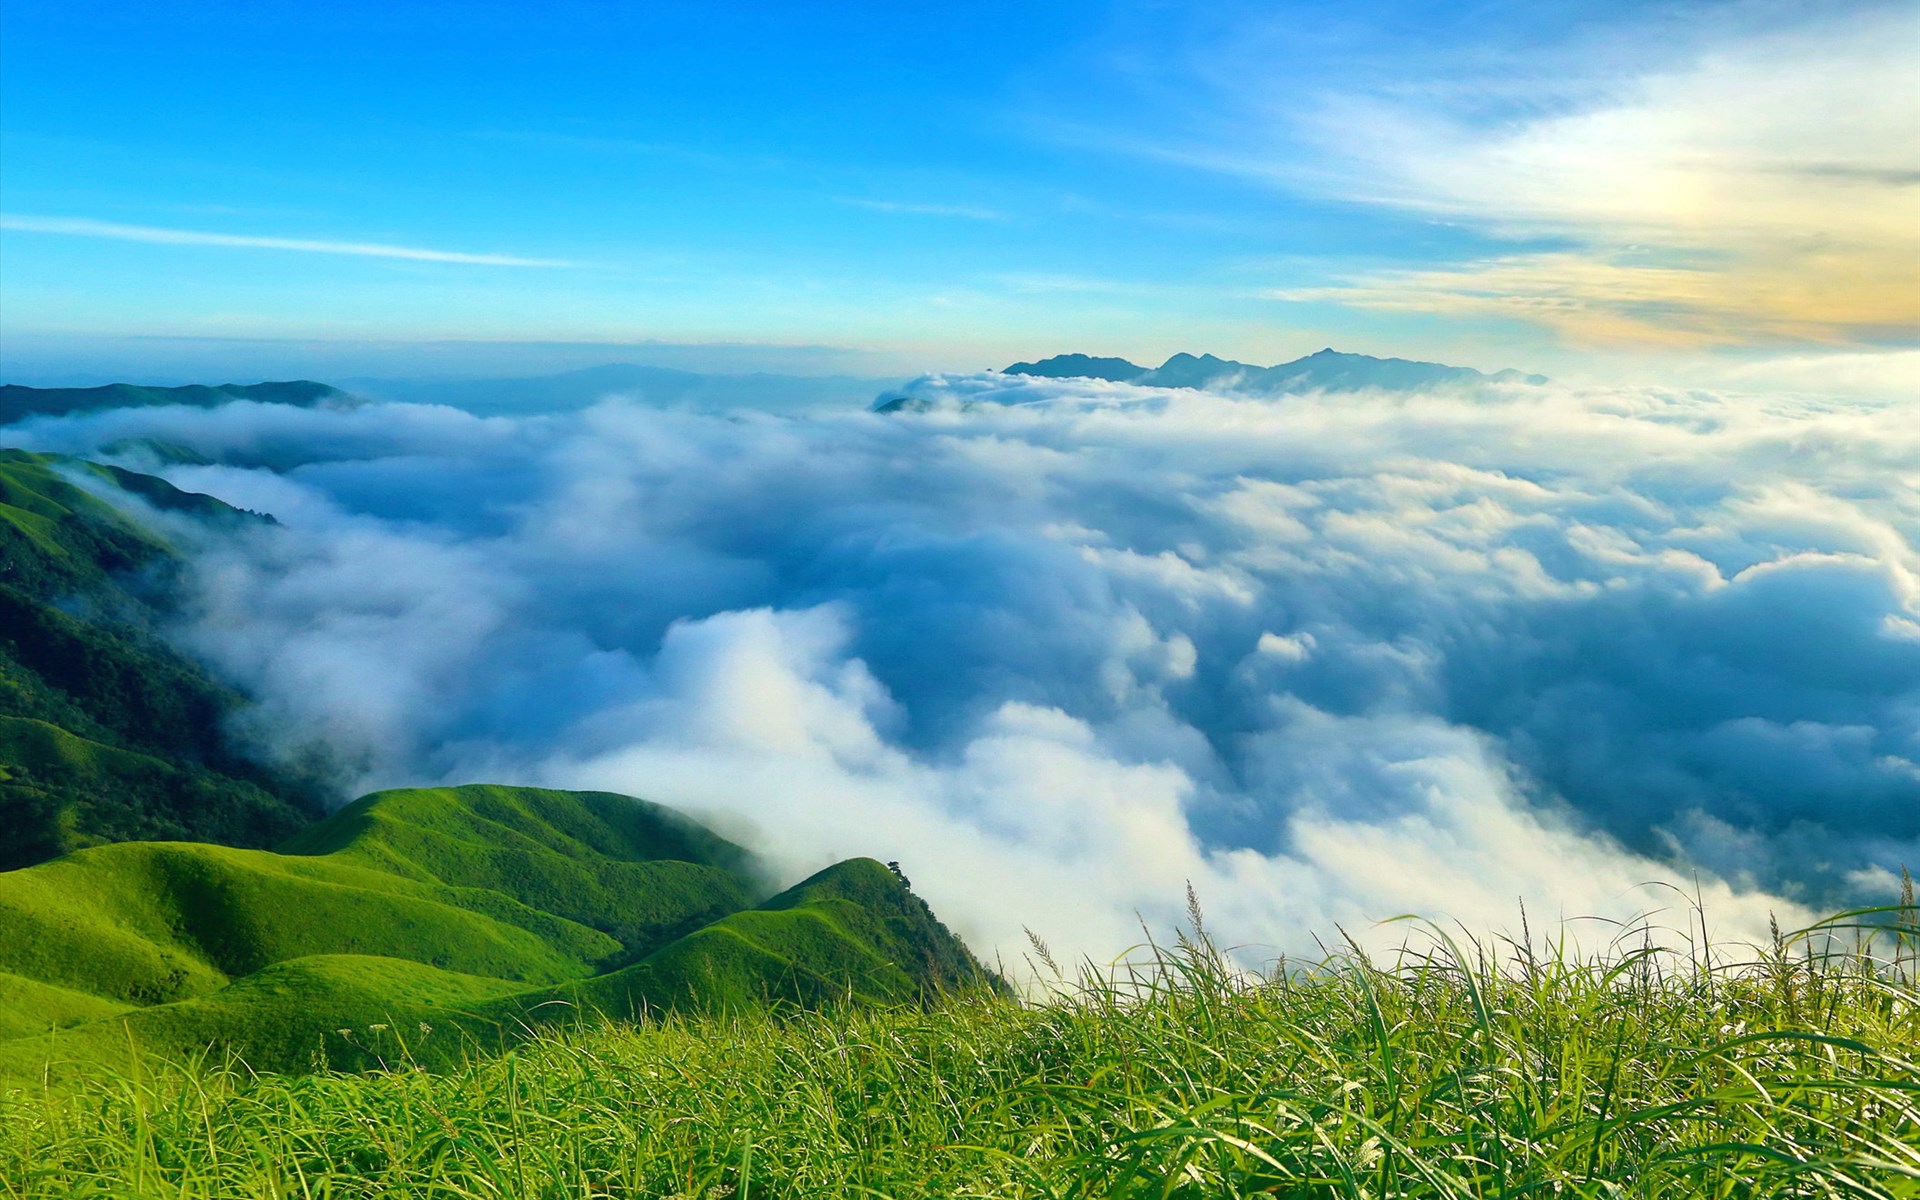 武功山是集人文景观和自然景观为一体的山岳型风景名胜区,同时也为